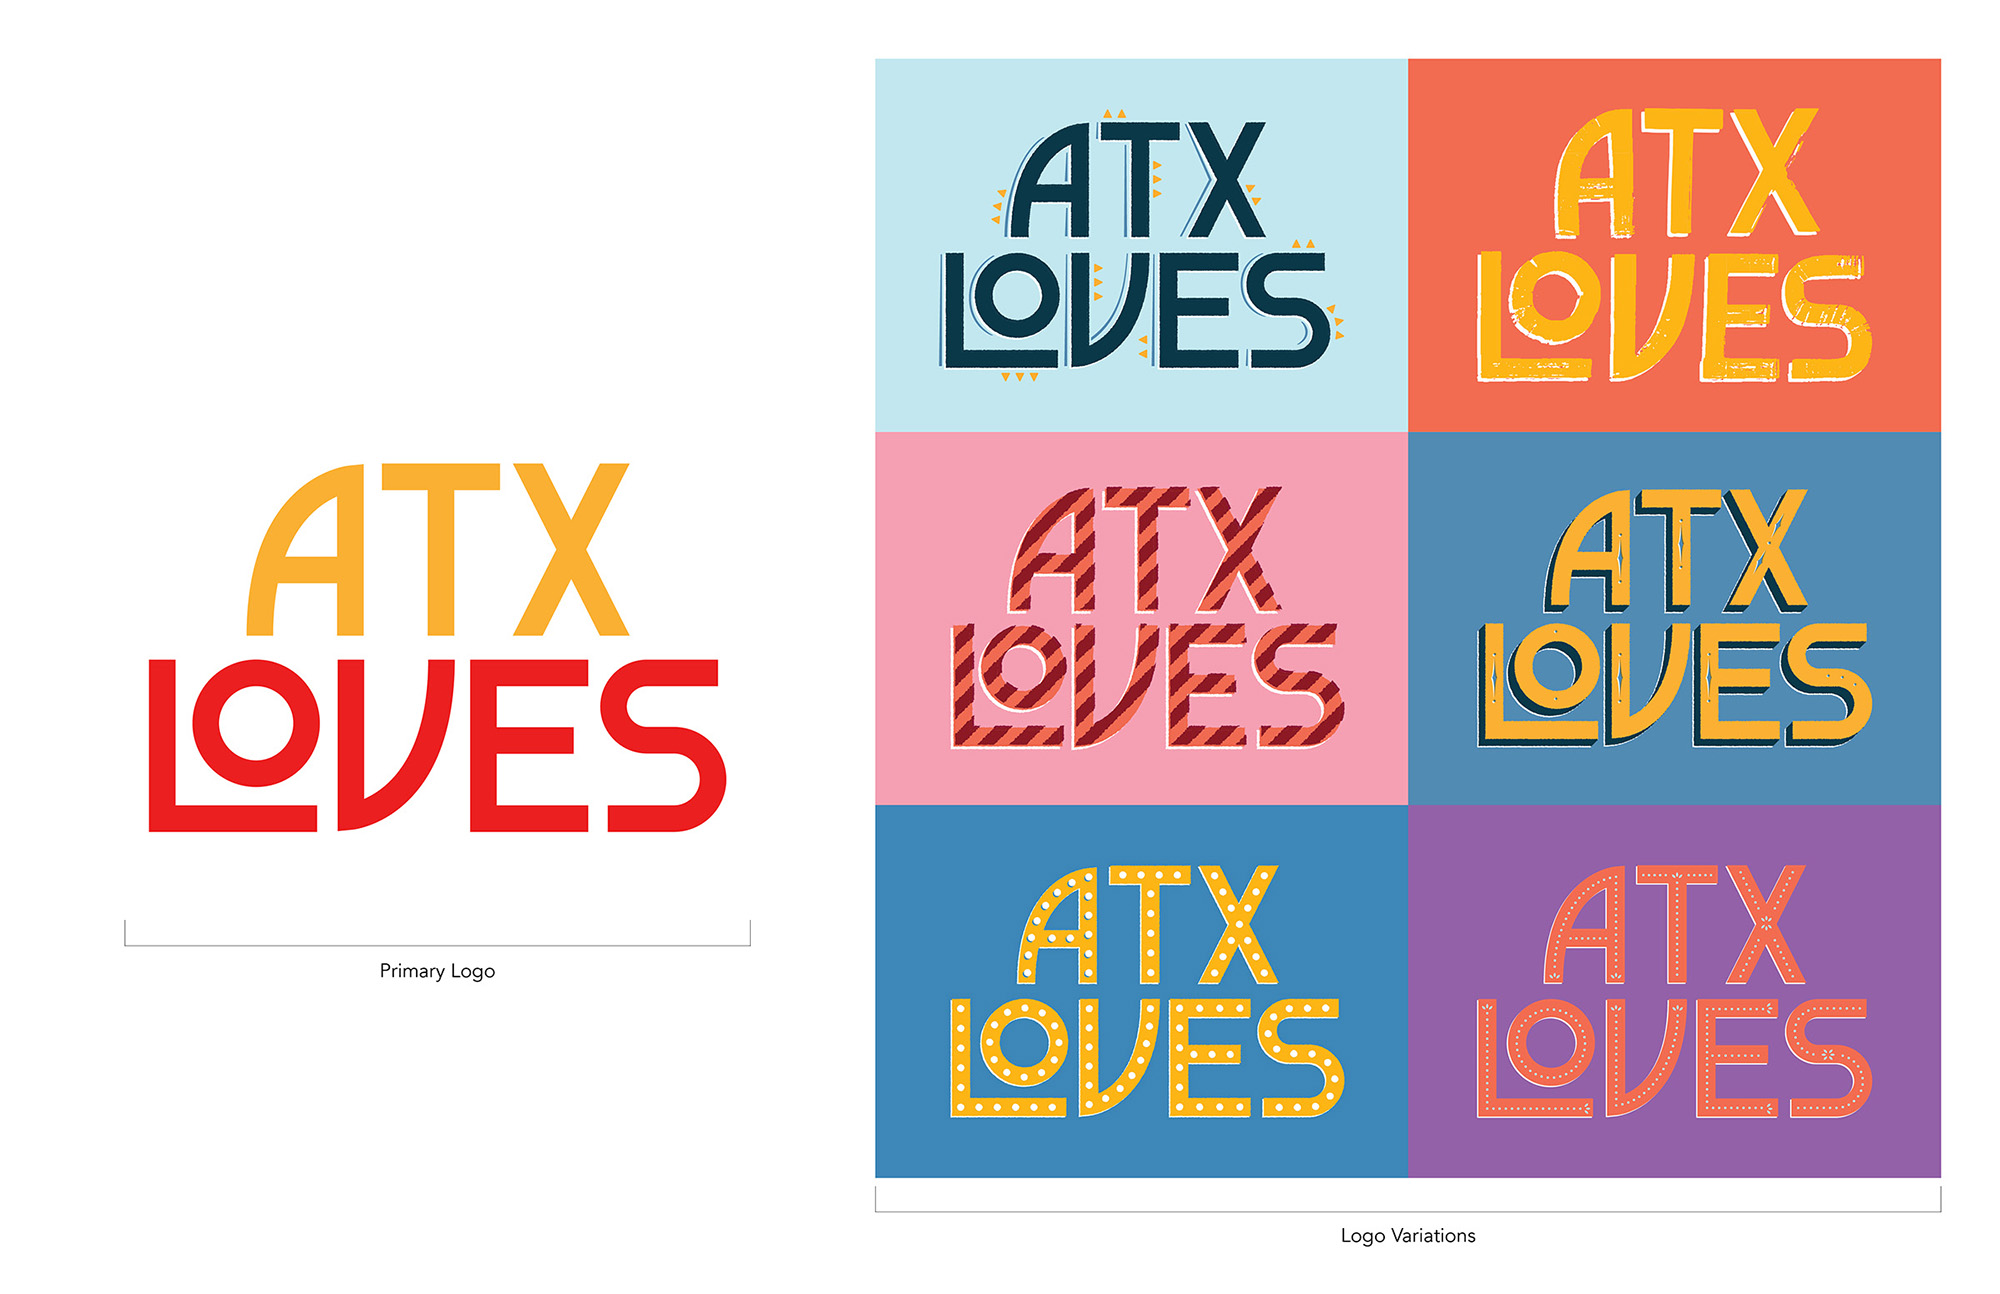 atx loves logo variations